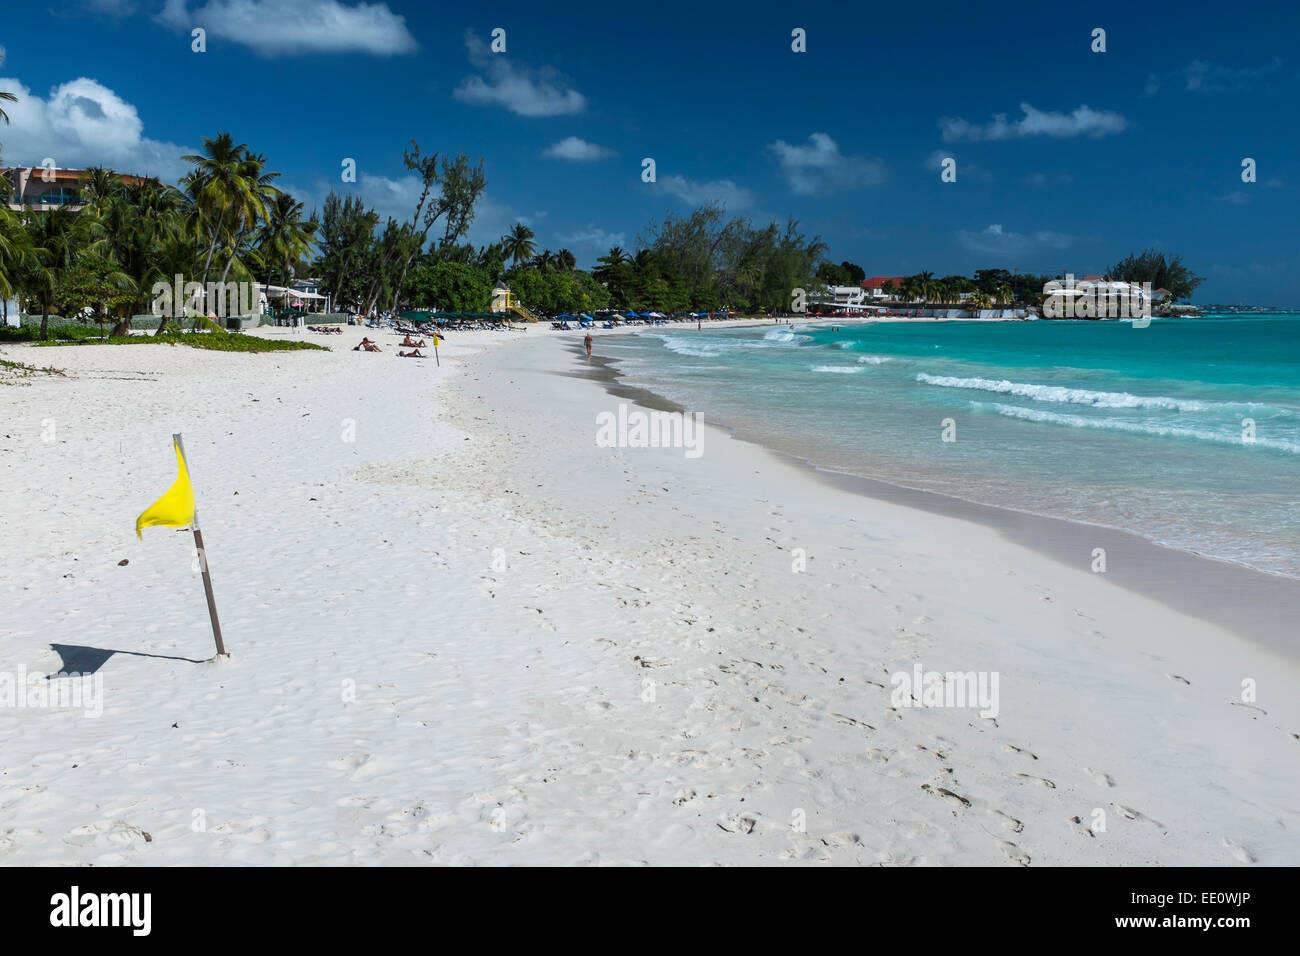 Bandiera gialla su Accra Beach, sulla costa sud dell'isola caraibica di Barbados nel West Indies - solo uso editoriale Foto Stock